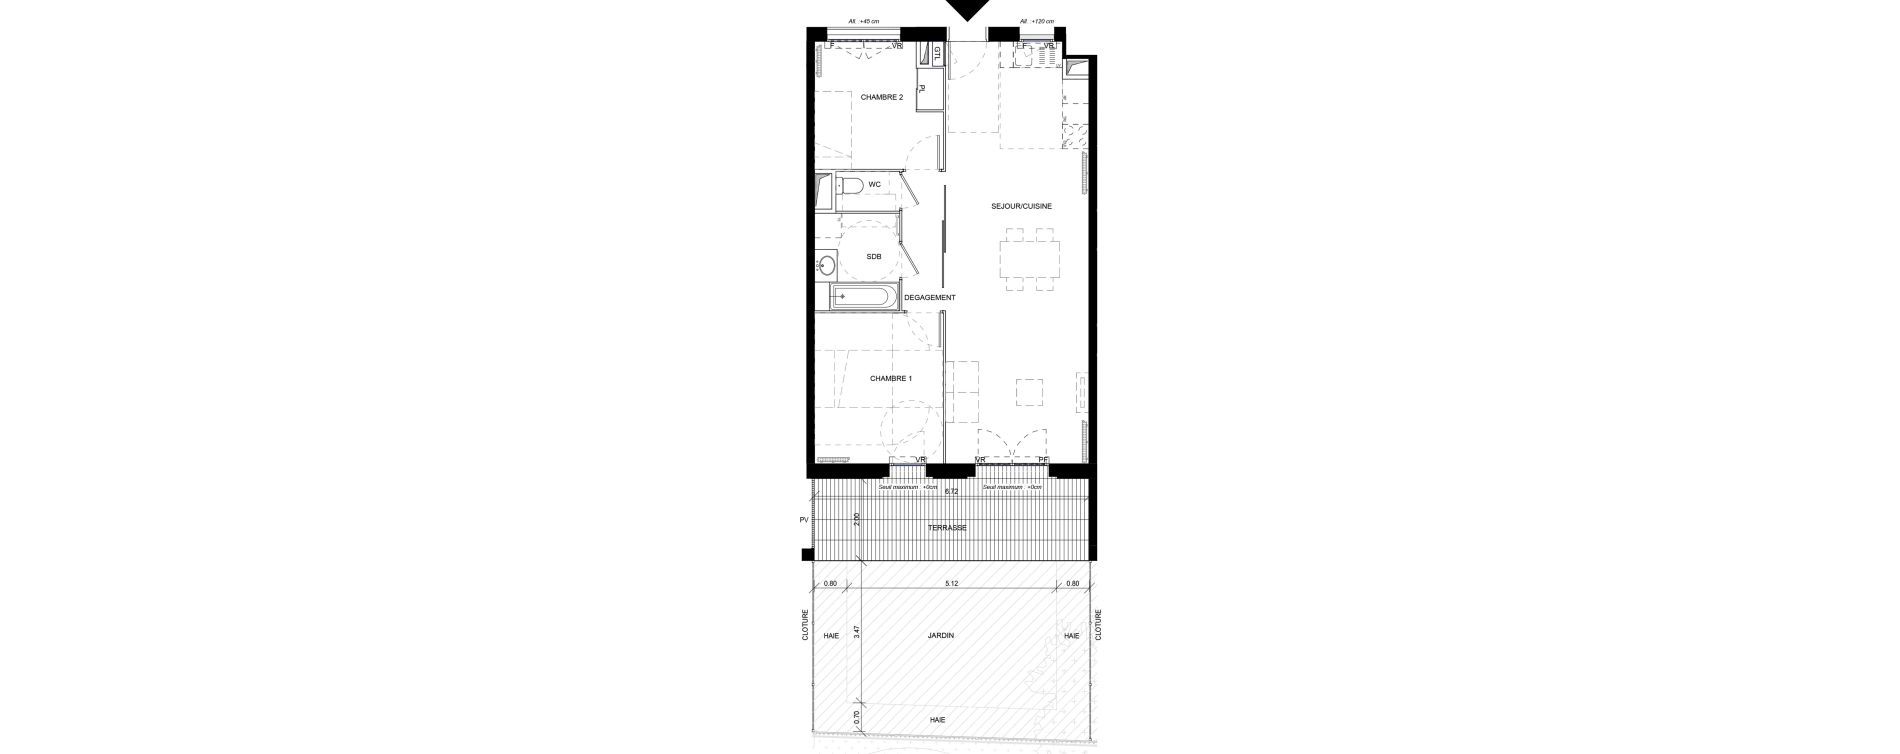 Appartement T3 de 66,30 m2 &agrave; Orly Carri&egrave;res - sentiers